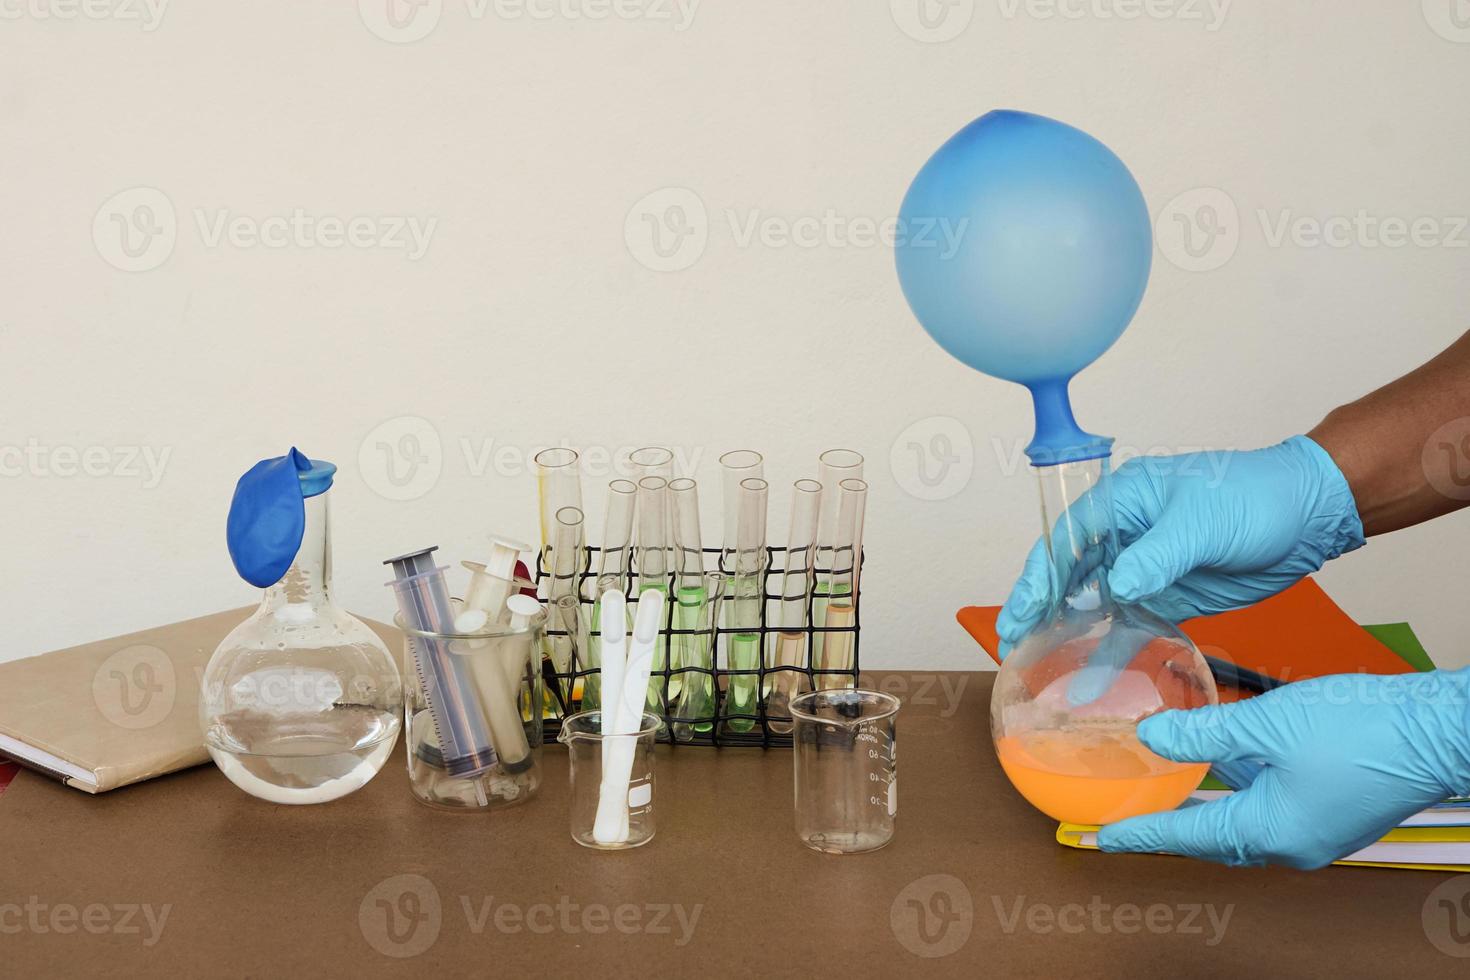 aluno faz experimento científico, aula de laboratório, garrafas transparentes com balões inflados em cima da garrafa. o experimento sobre a reação do ar ou gás usando substâncias químicas. assunto de ciência da educação foto